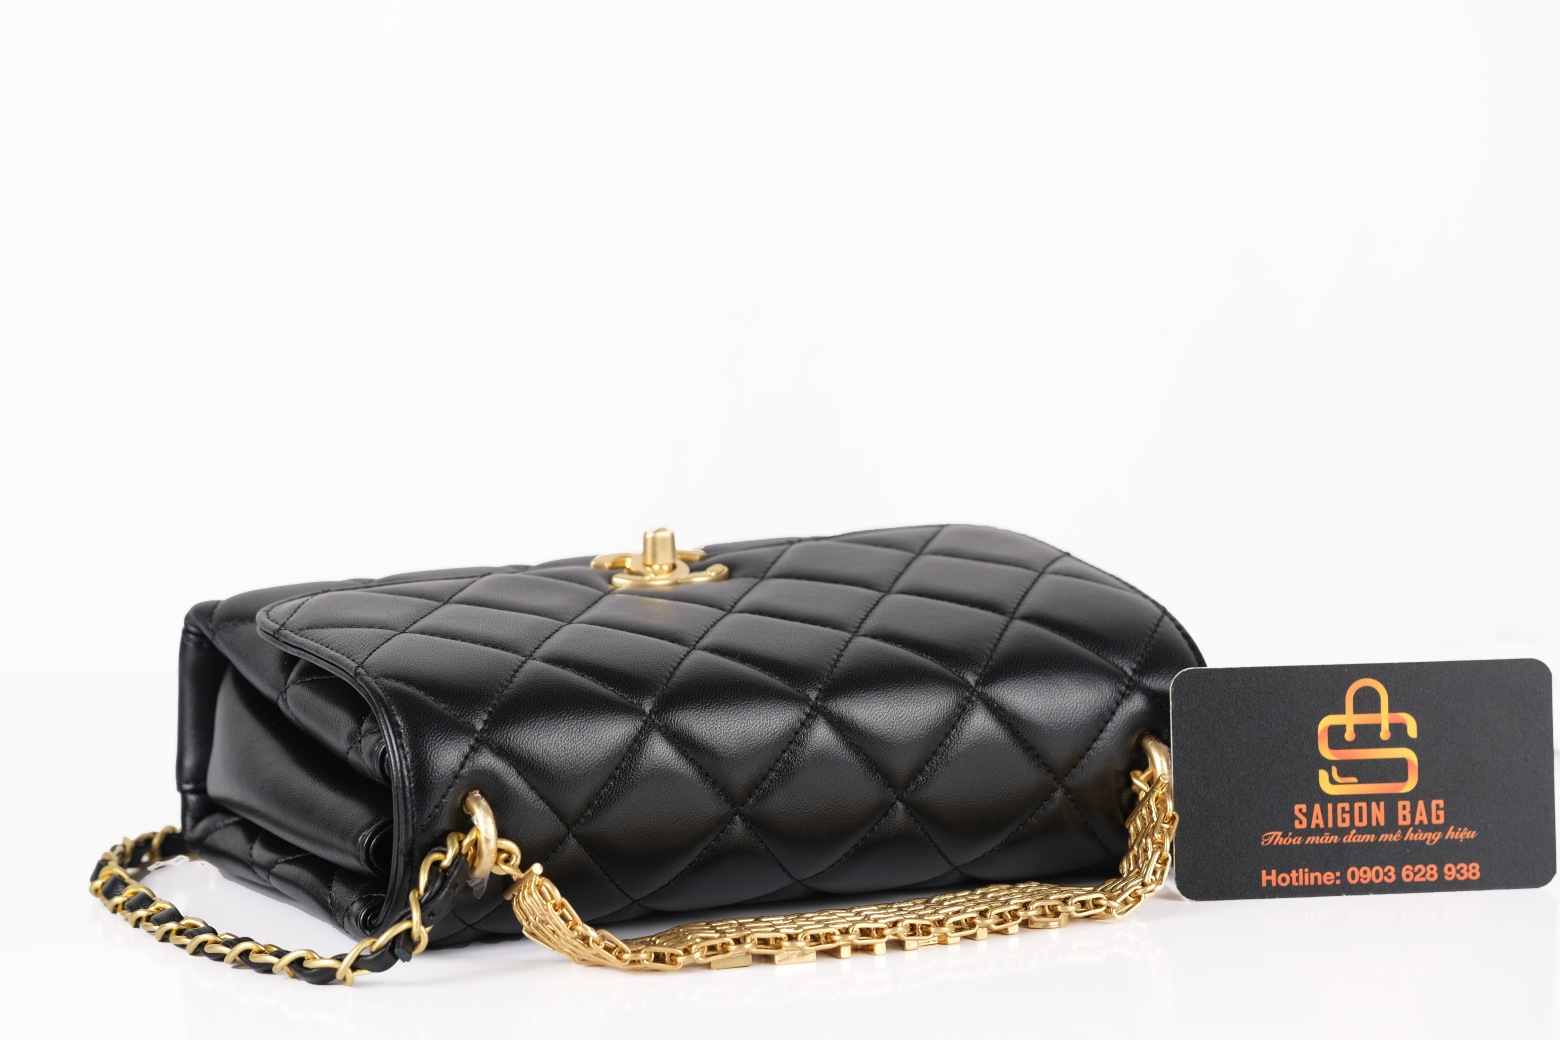 Túi Xách Chanel Flap Bag SS2022 - Đen